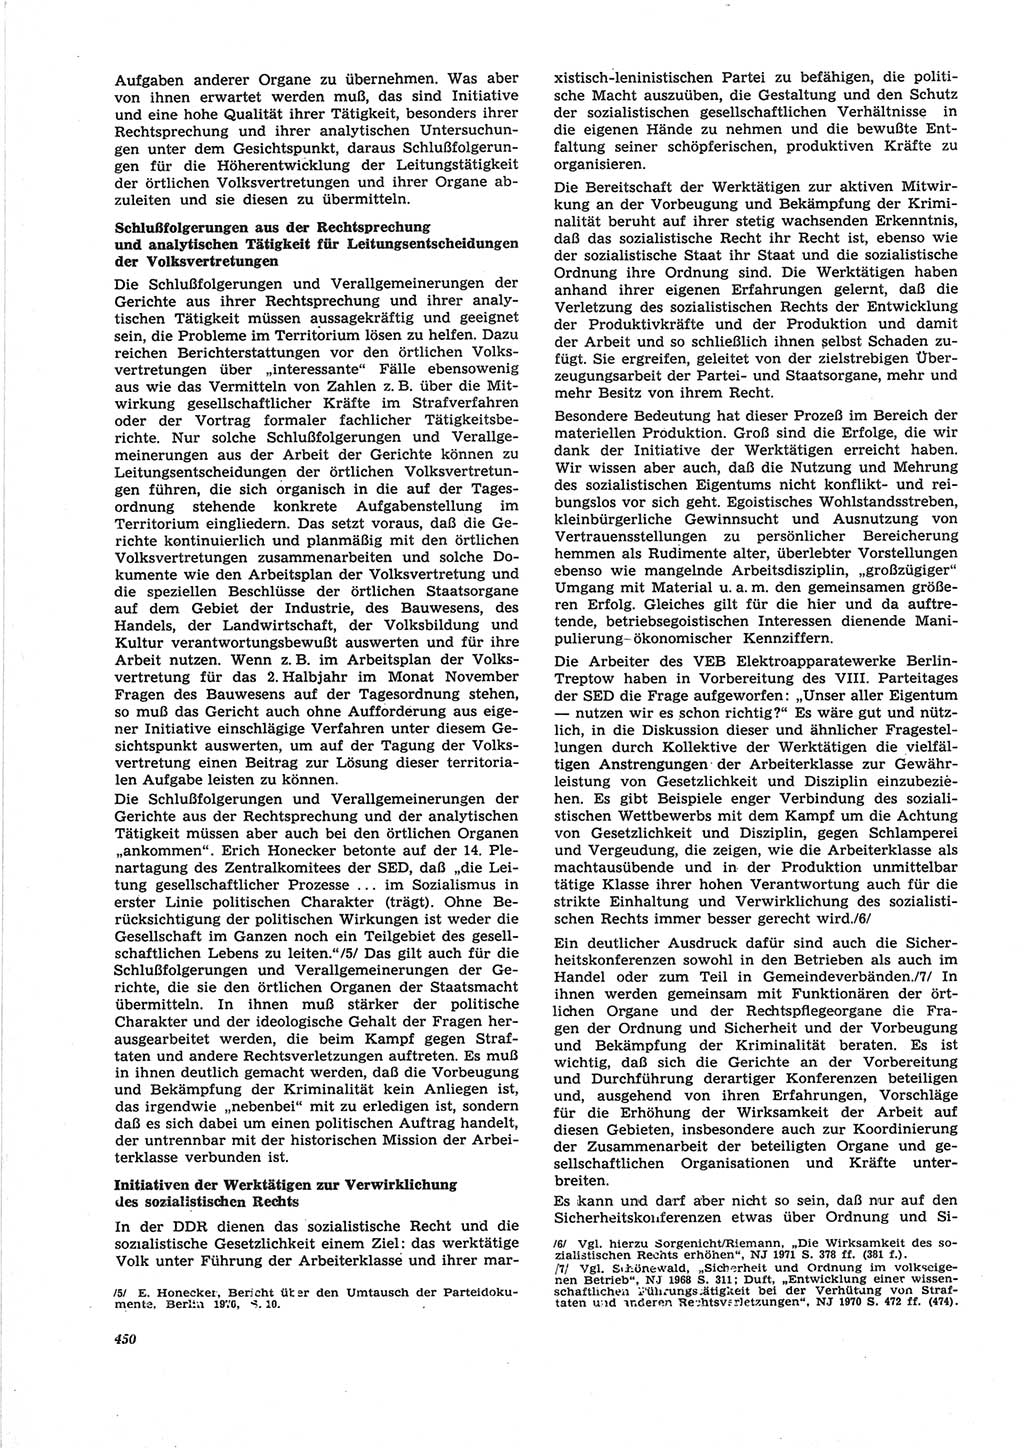 Neue Justiz (NJ), Zeitschrift für Recht und Rechtswissenschaft [Deutsche Demokratische Republik (DDR)], 25. Jahrgang 1971, Seite 450 (NJ DDR 1971, S. 450)